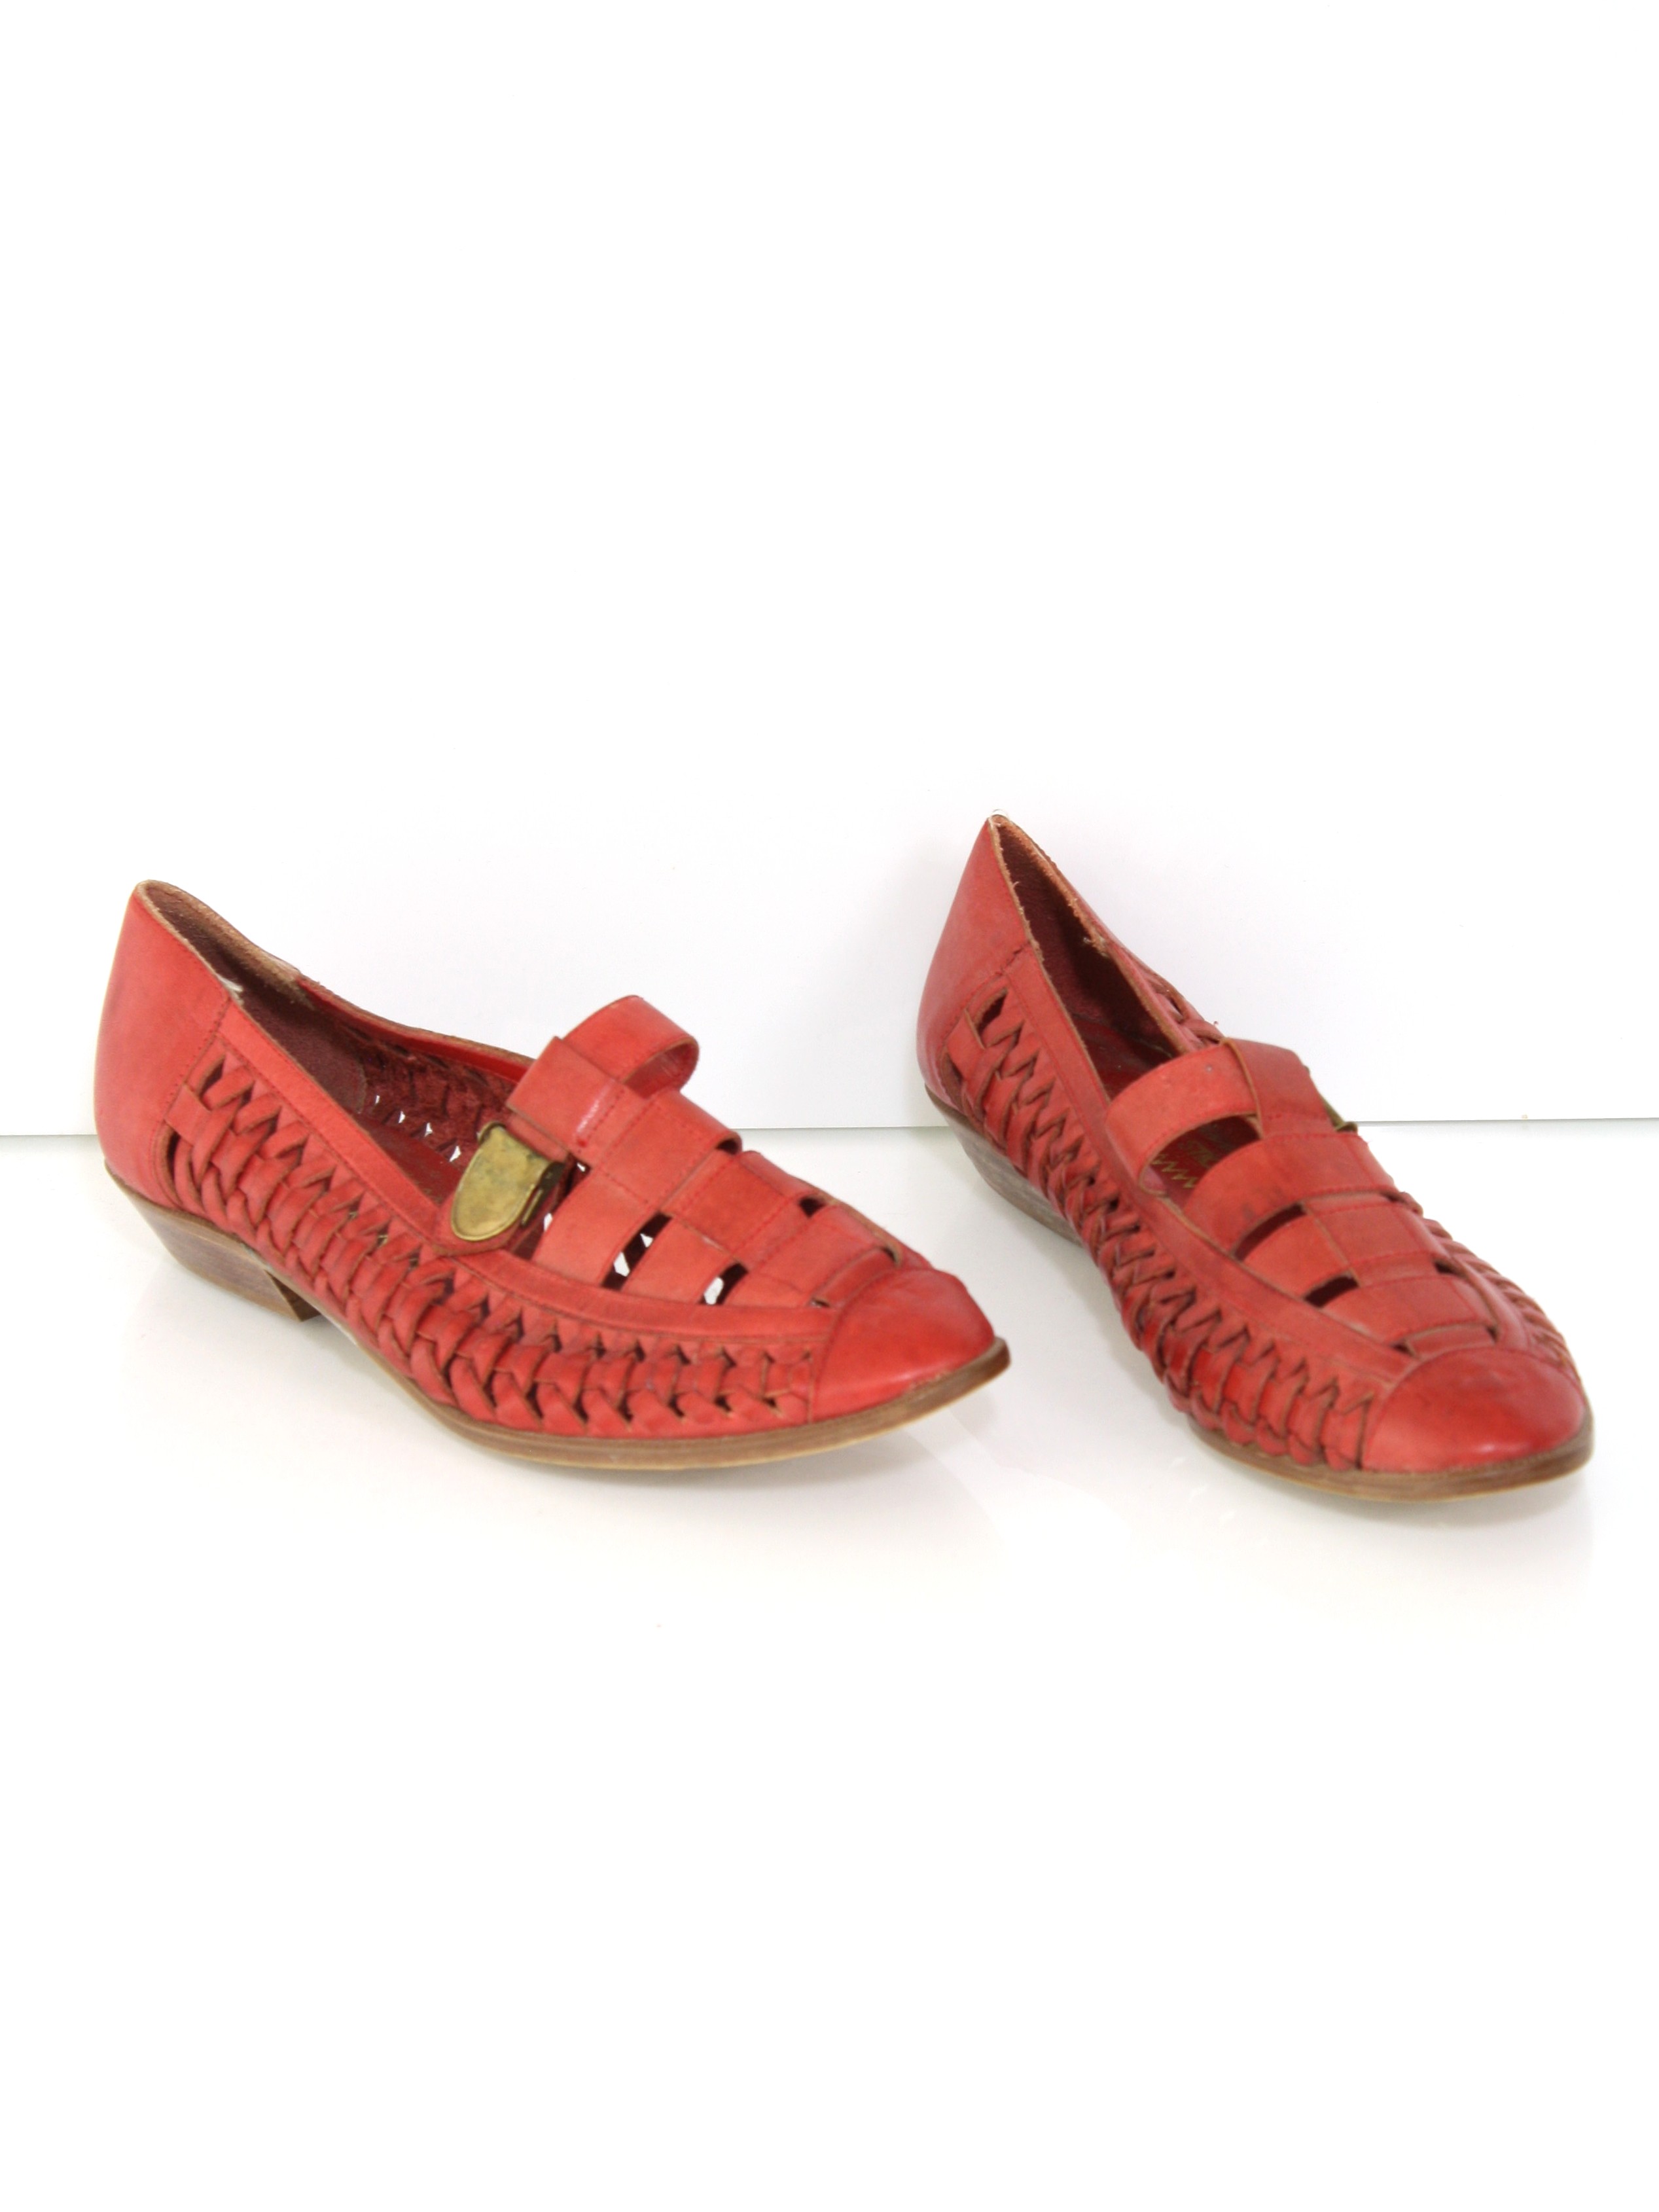 Retro 1980's Shoes (Match Sticks) : 80s -Match Sticks- Womens red ...